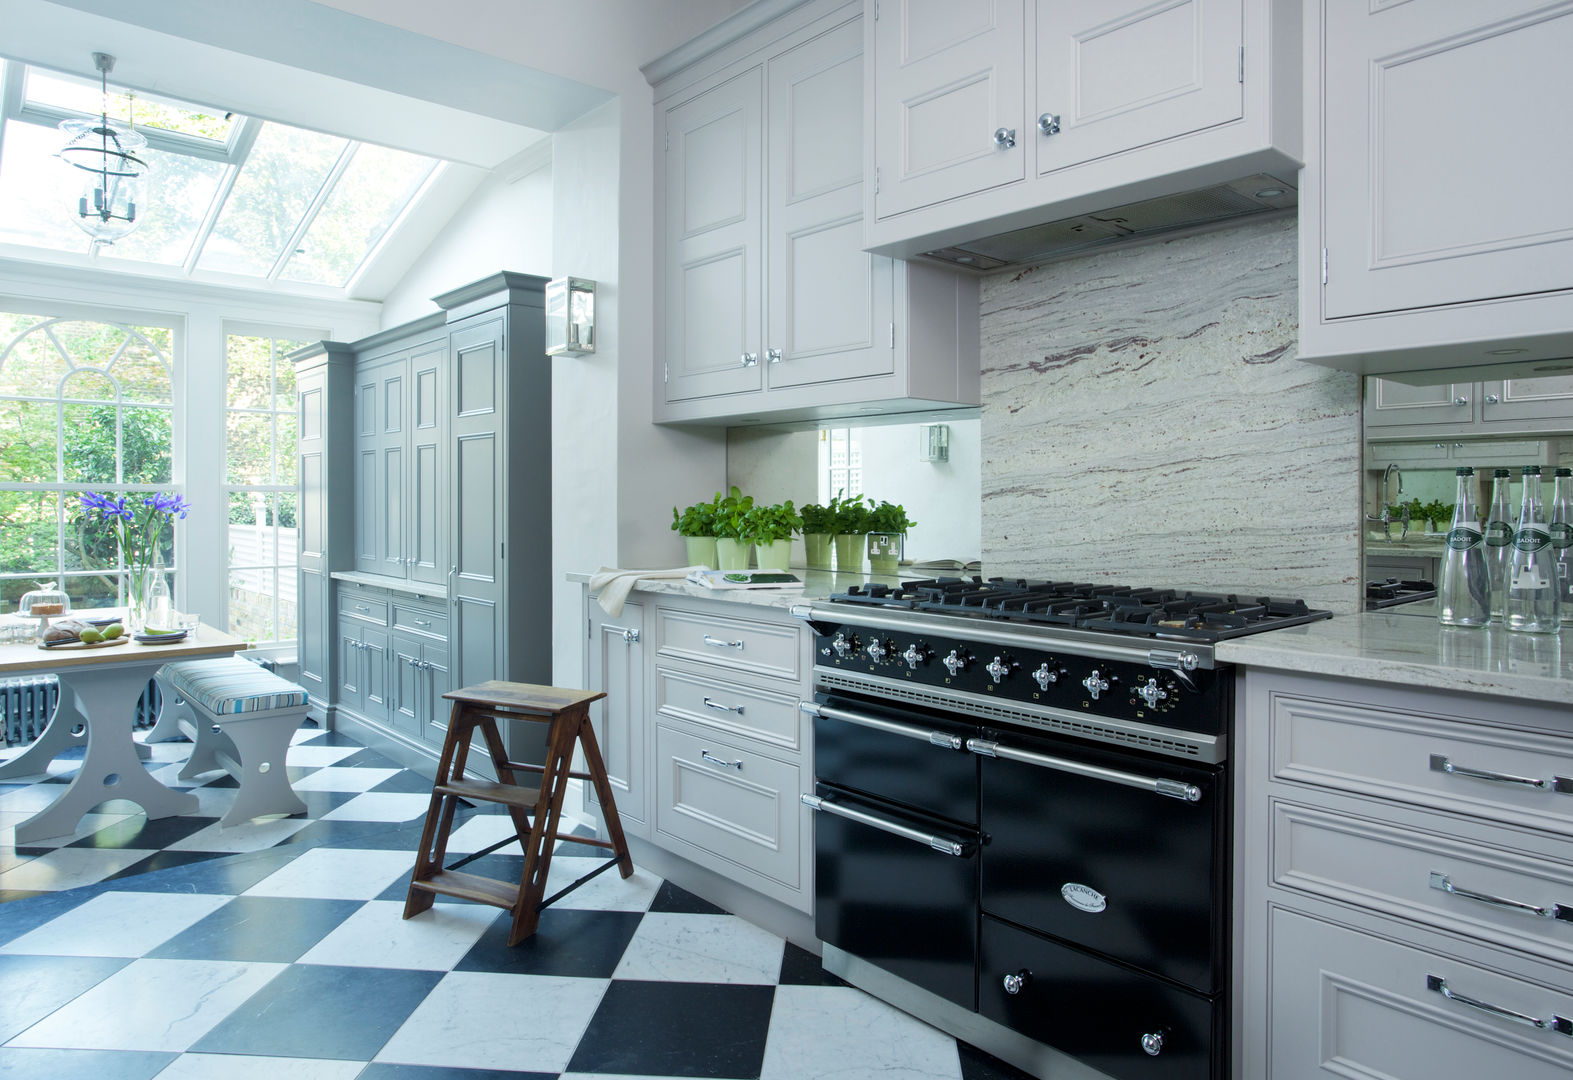 Chelsea Kitchen, Lewis Alderson Lewis Alderson Classic style kitchen Cabinets & shelves